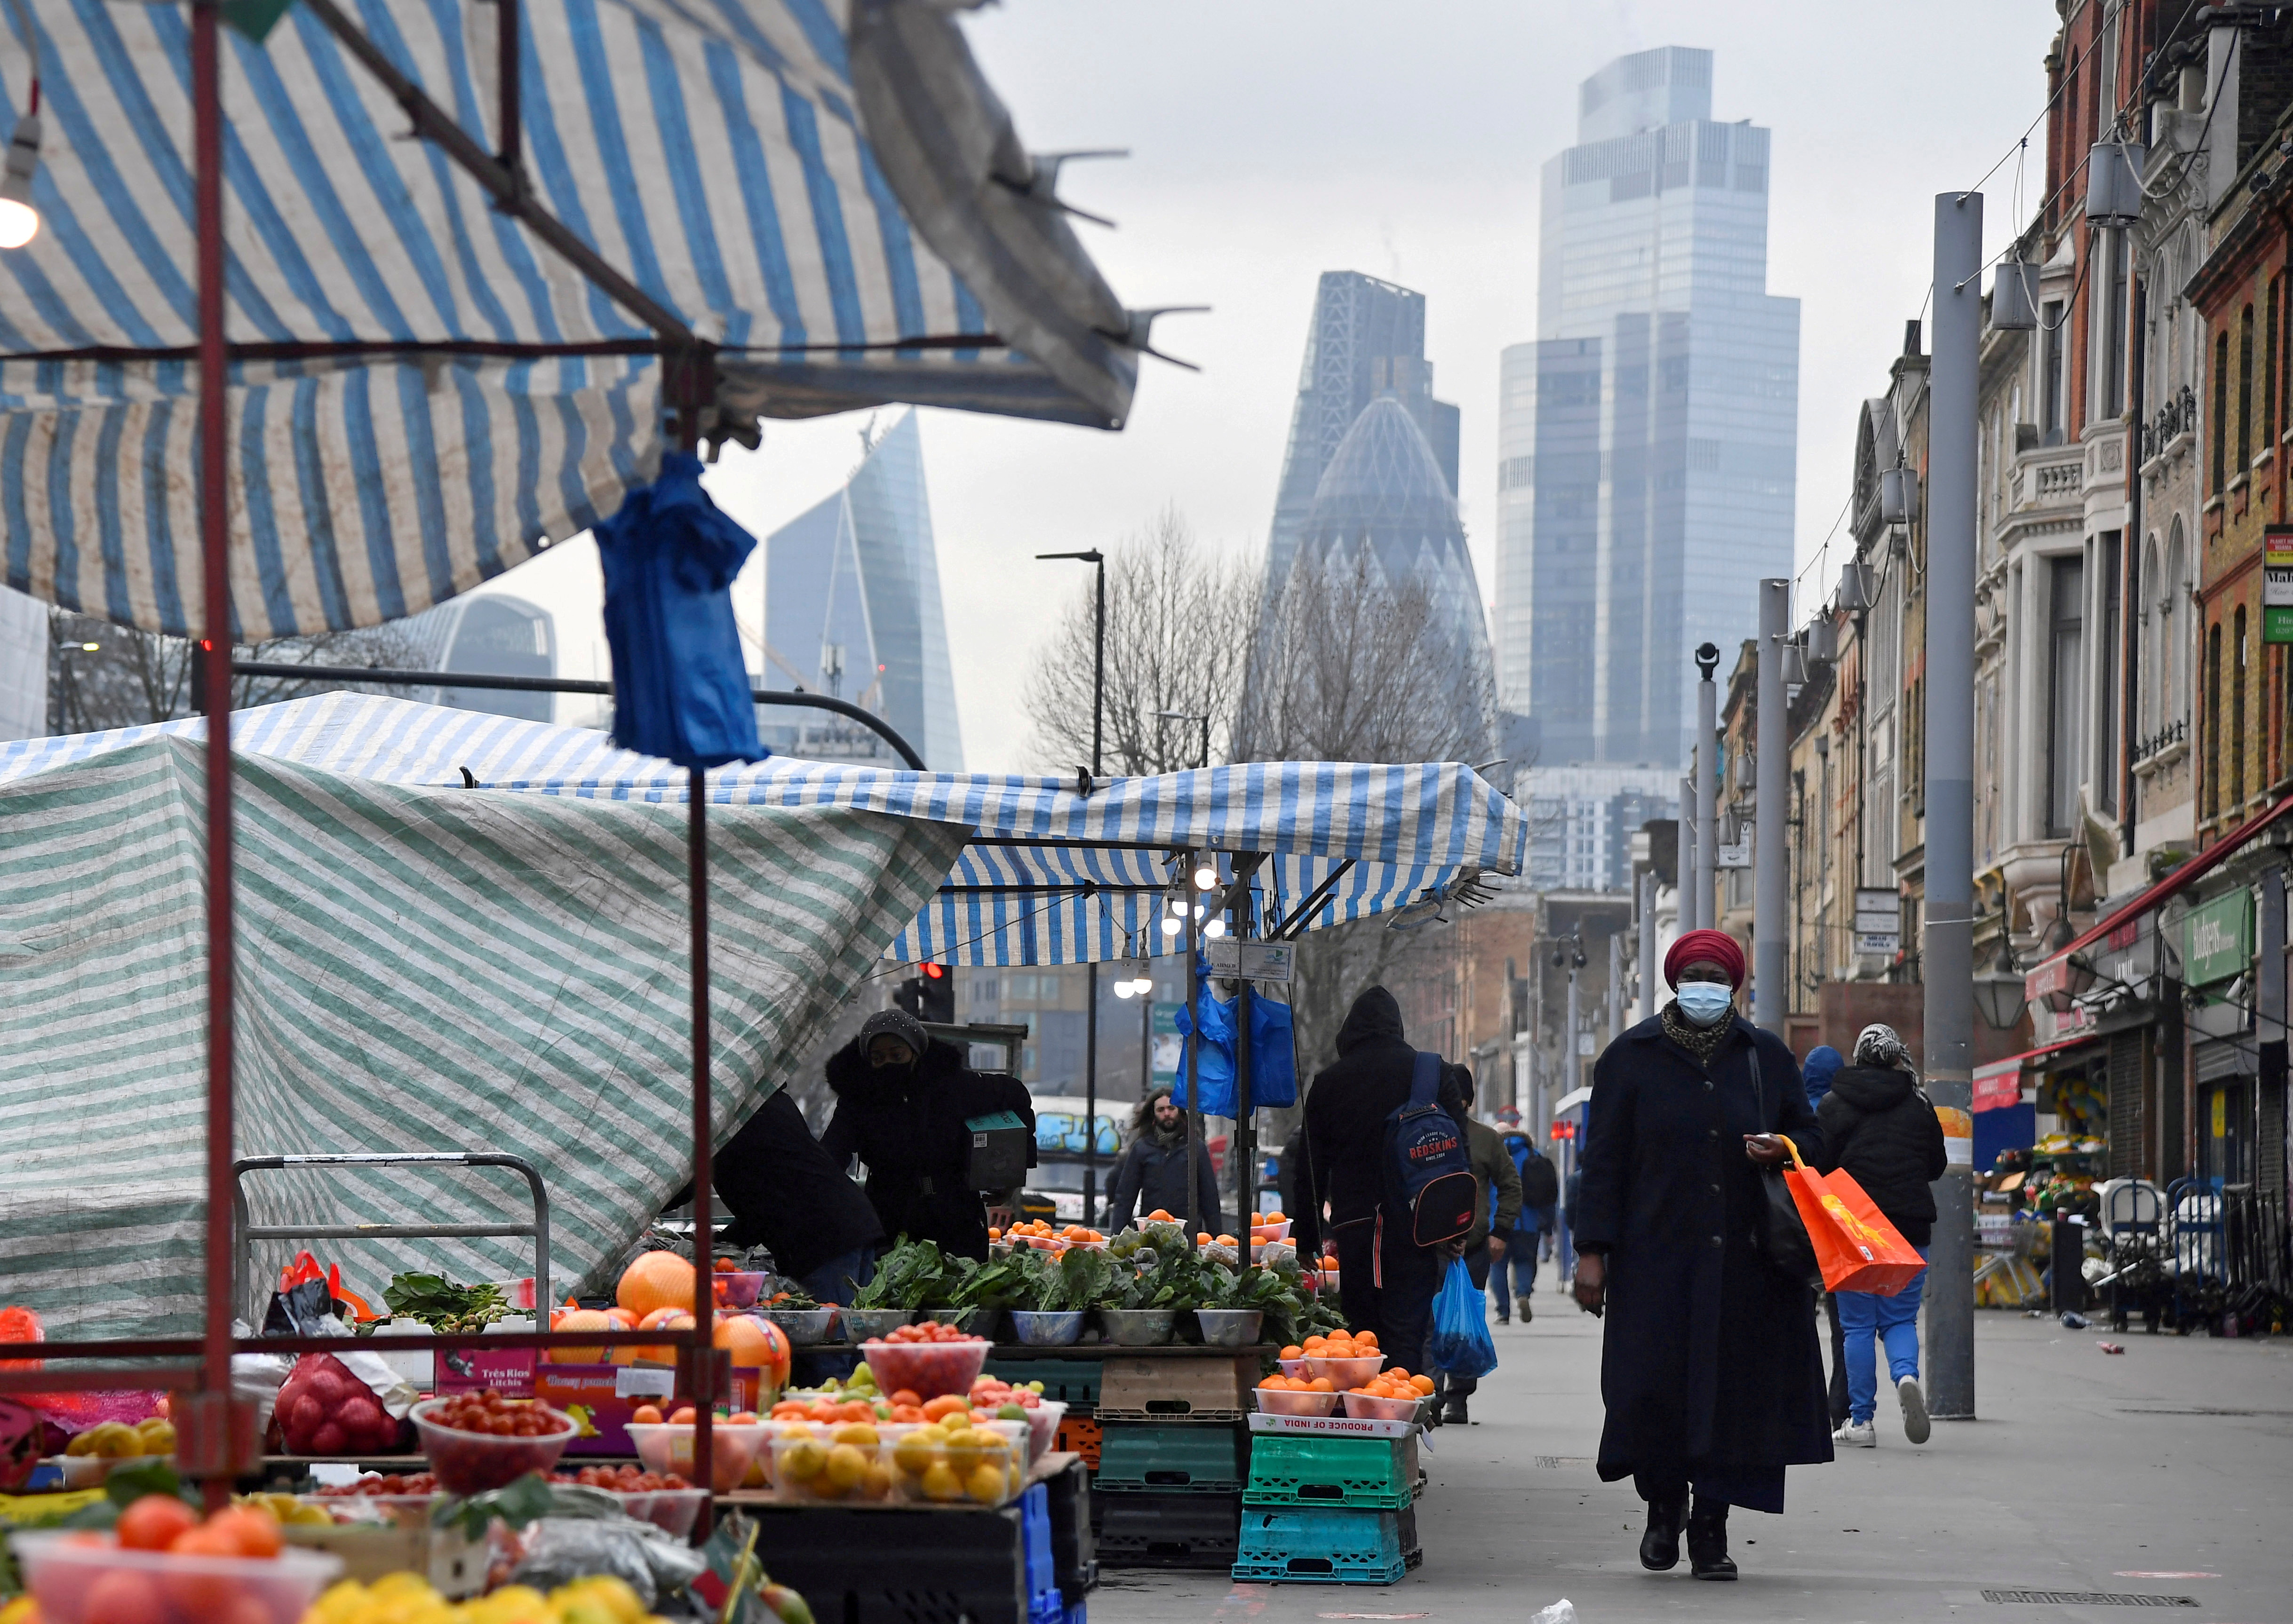 Comercio local en Londres. (FOTO: REUTERS/Toby Melville)
